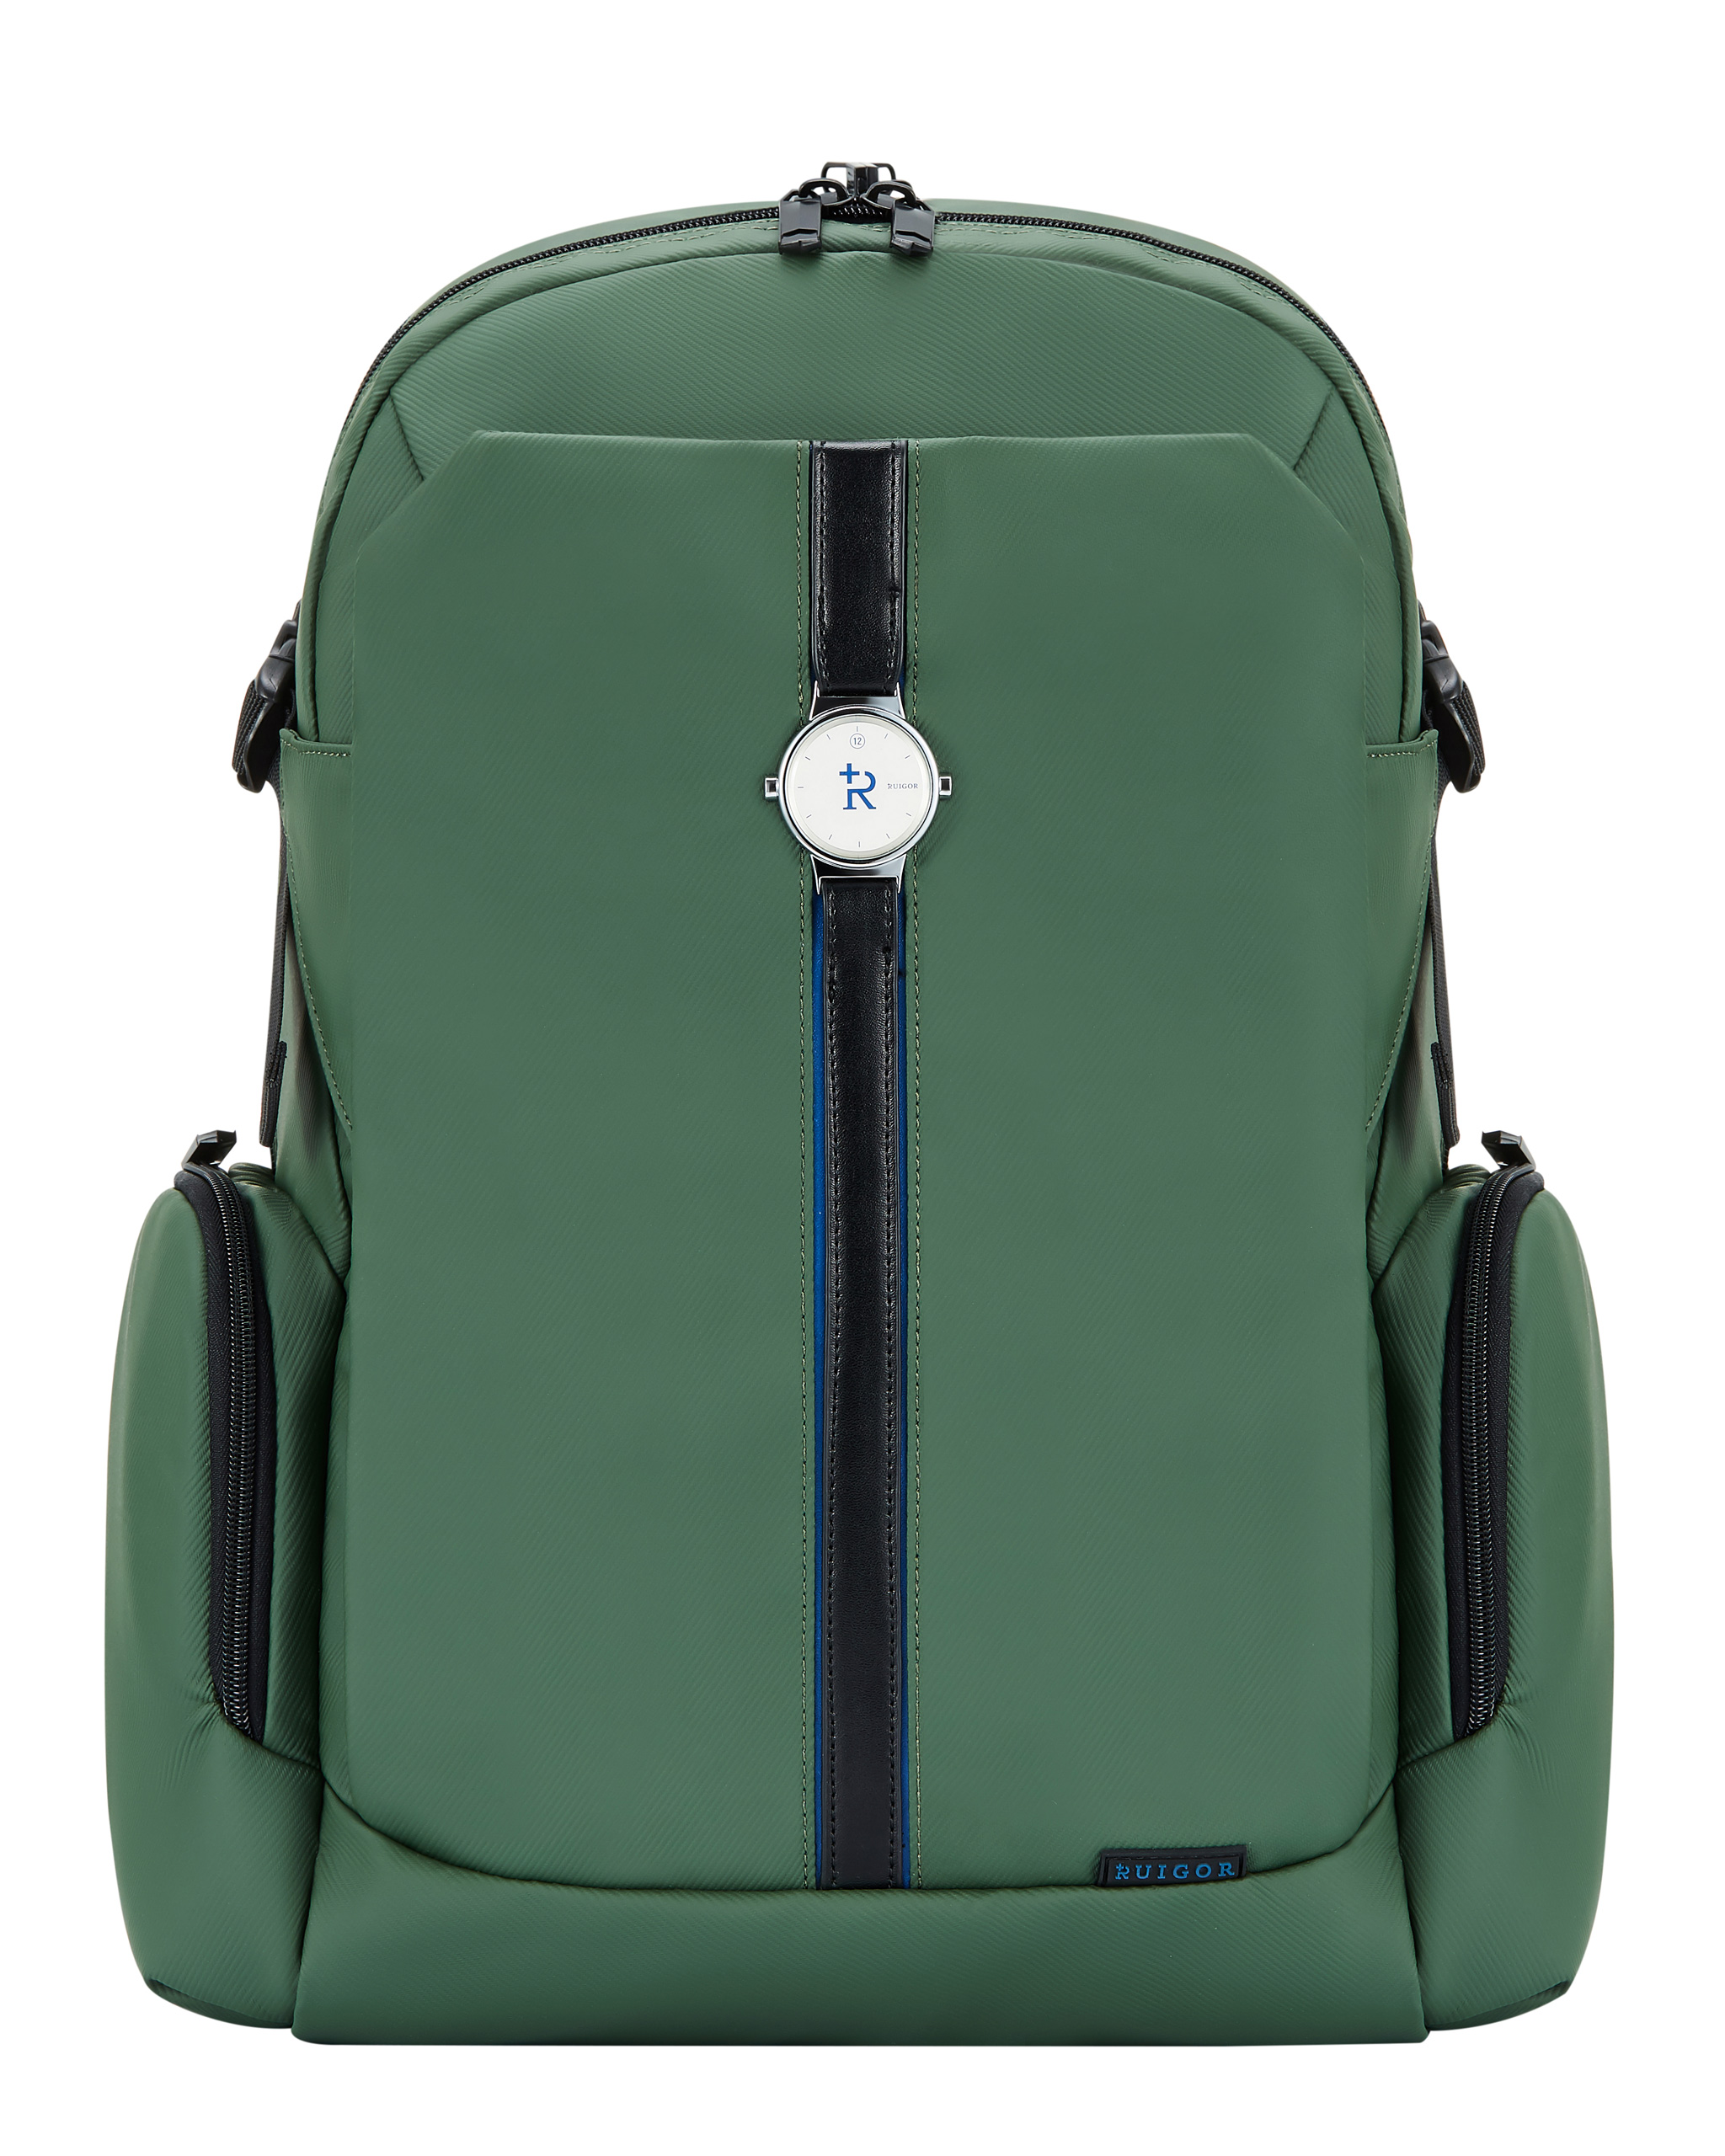 Green Leaves Print Backpack | Green leaf print, Bags, Backpacks